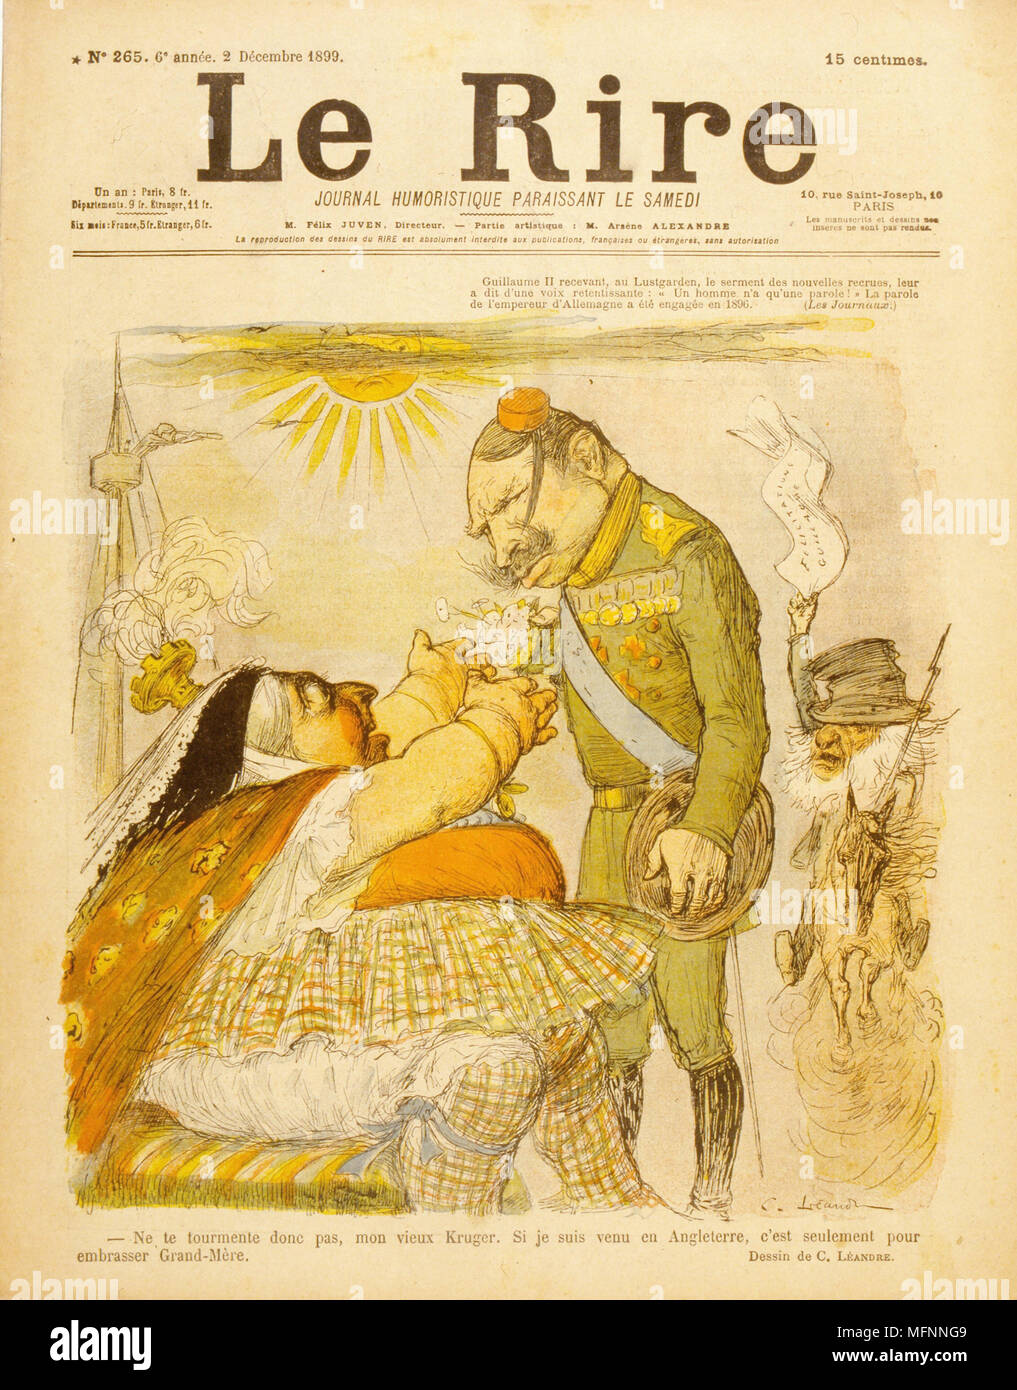 Die deutsche Außenpolitik 1899, die Unterstützung der Buren in Südafrika (Boer) Krieg. Wilhelm II. sagte Kruger, die Boer Führer, keine Sorgen zu machen, als er im Begriff war, nach Großbritannien seine Großmutter zu umarmen, Königin Victoria. Karikatur aus "Le Rire", Paris, 2. Dezember 1899 Stockfoto